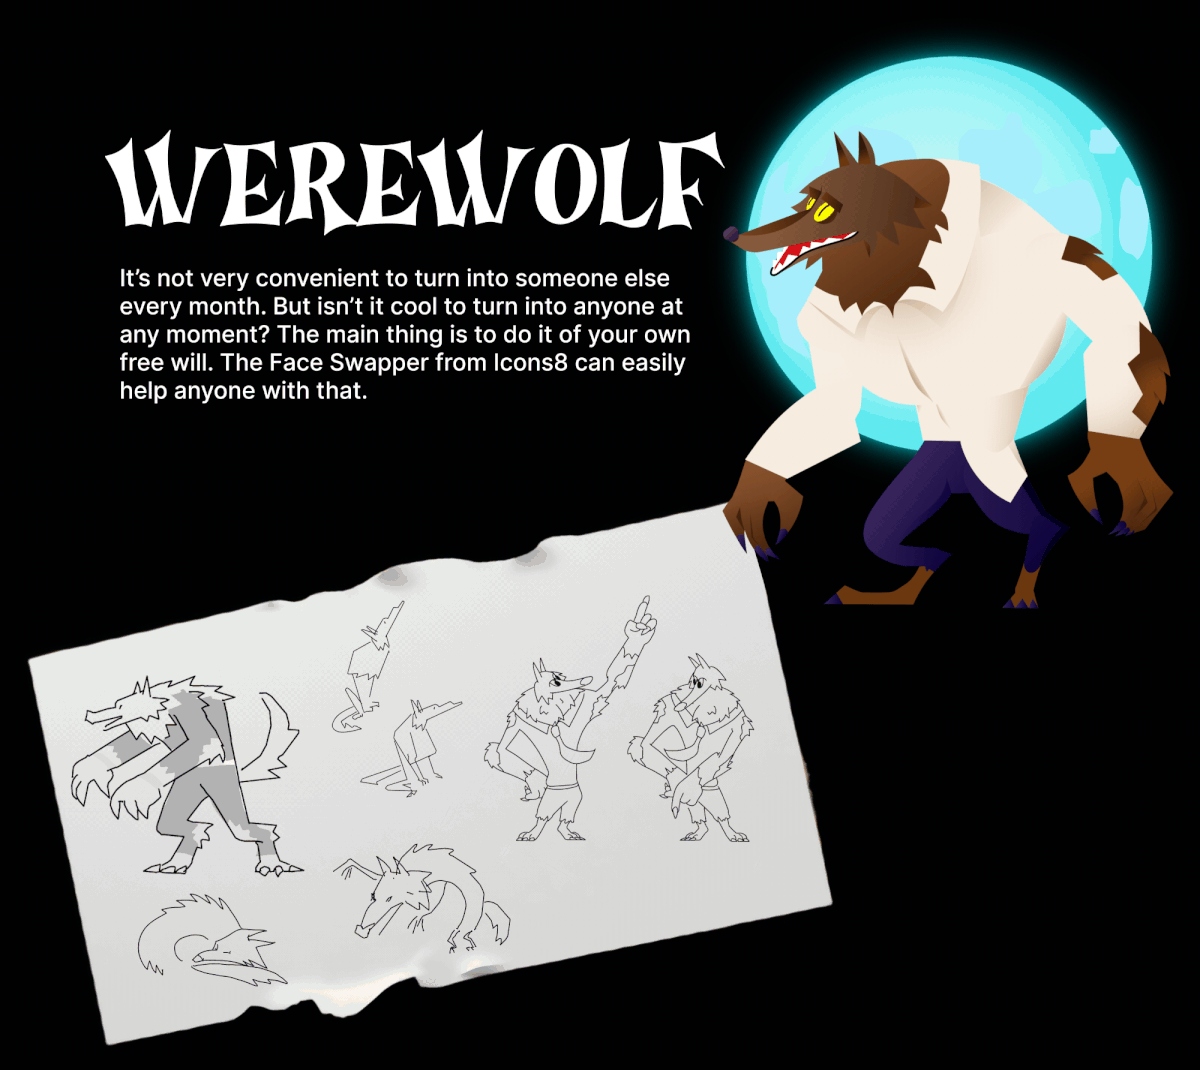 Werewolf transformation and sketches